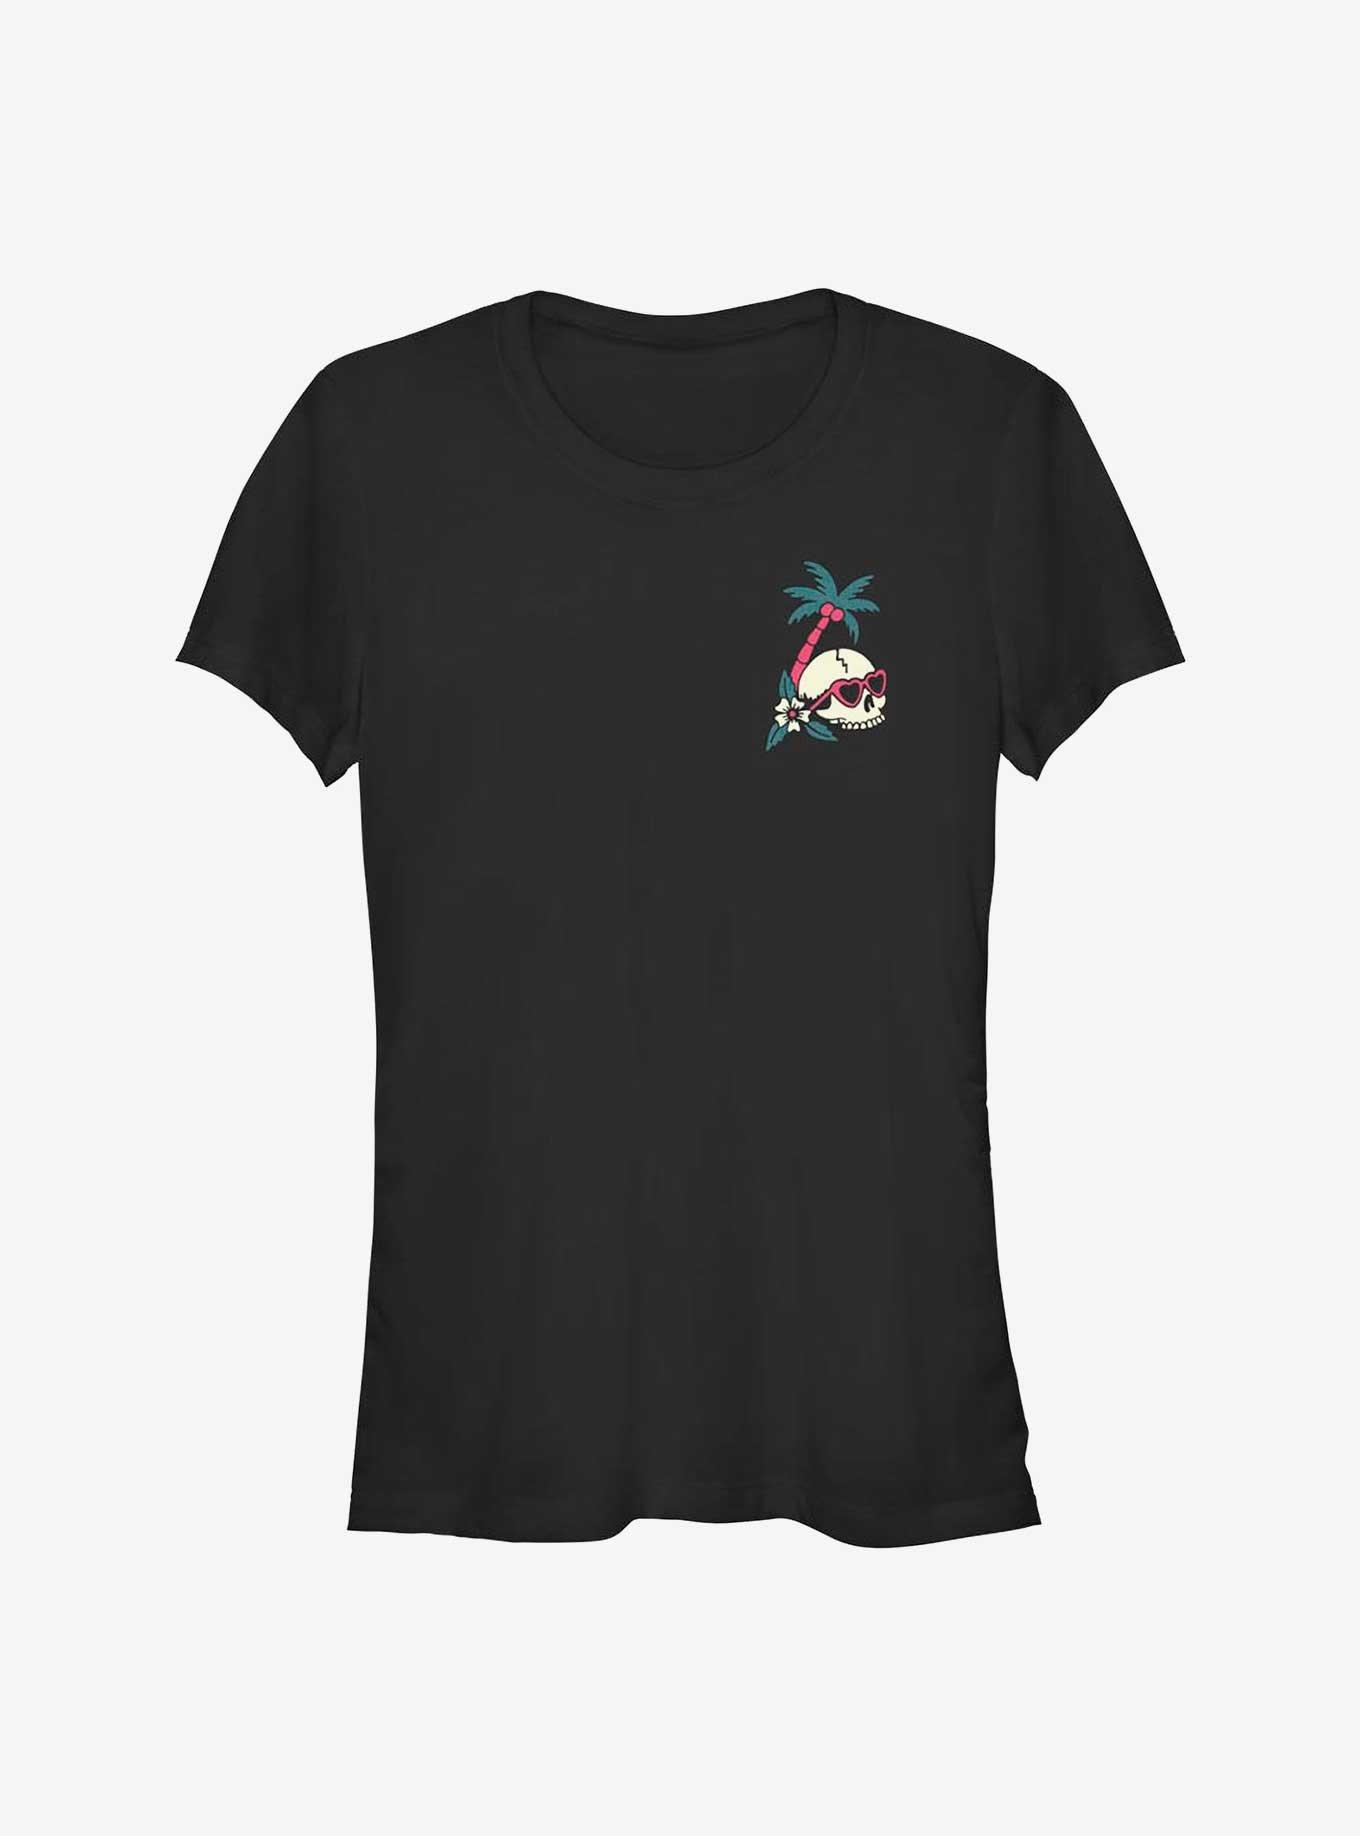 Tropic Skull Emblem Girls T-Shirt, , hi-res